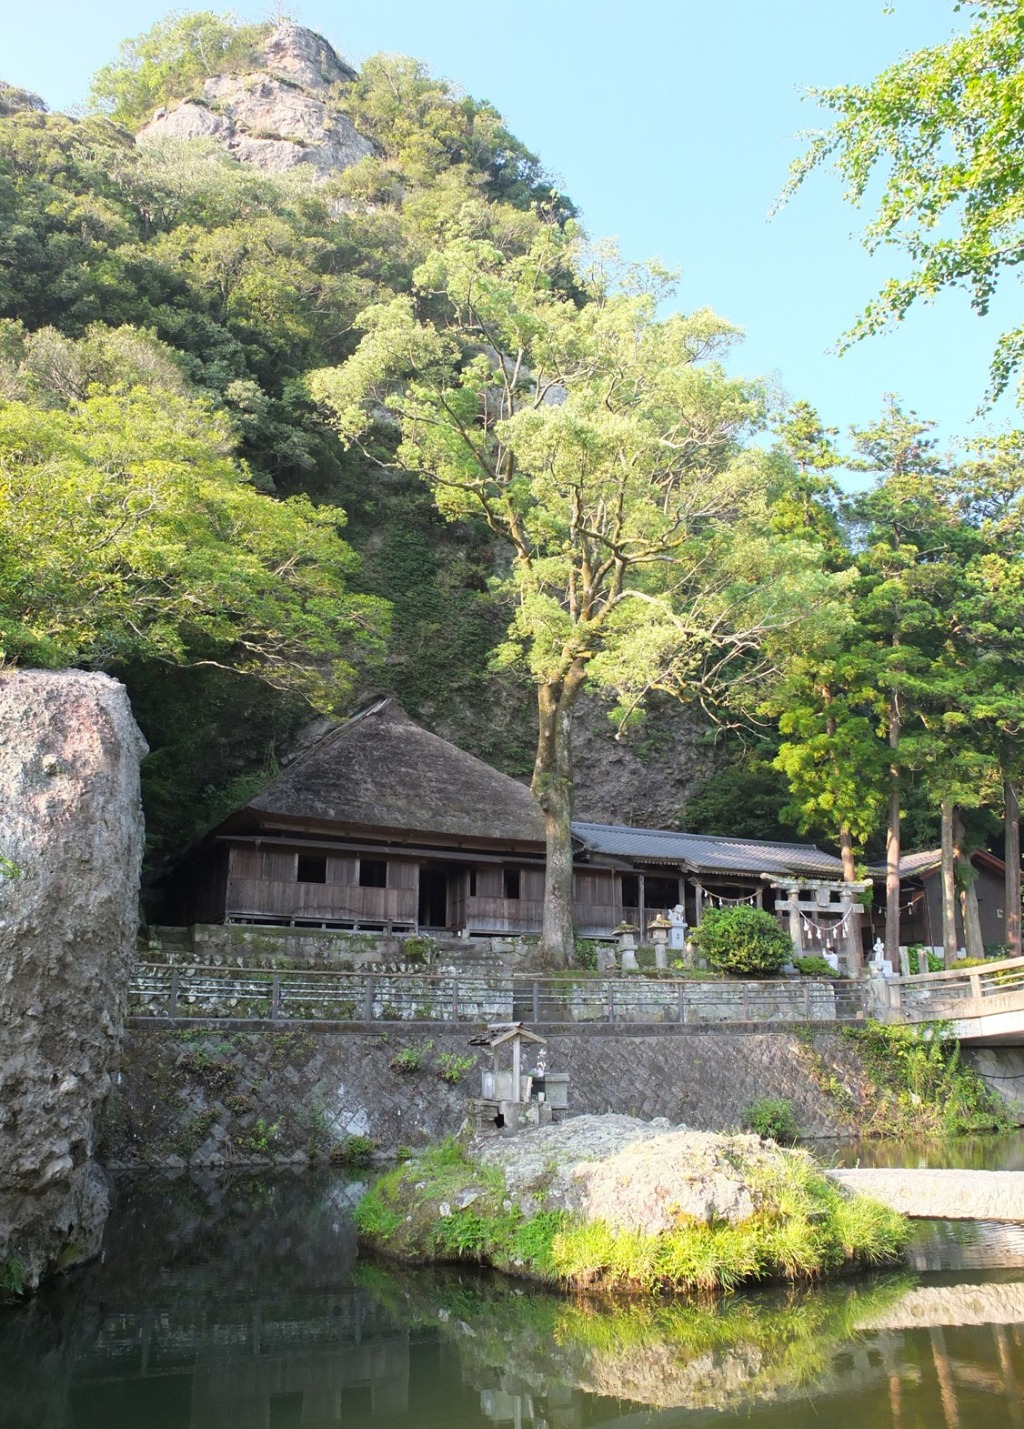 Le sentier de Ten-nen-ji-yaba